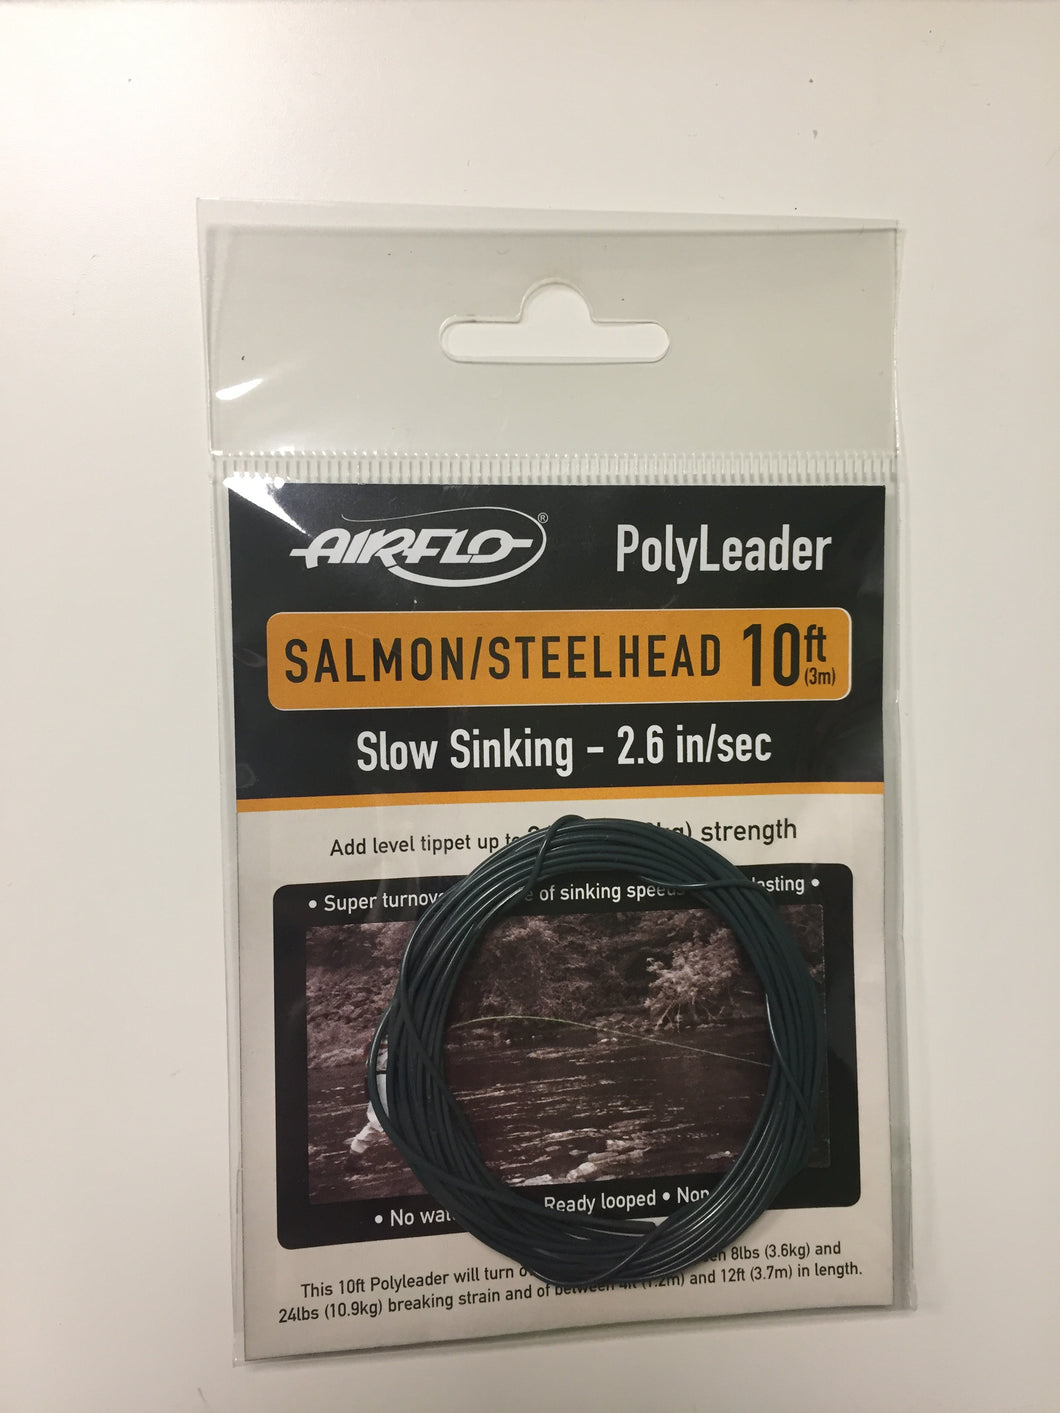 Airflo Salmon/Steelhead Polyleader (Green)(10ft/Slow Sinking/24lbs)